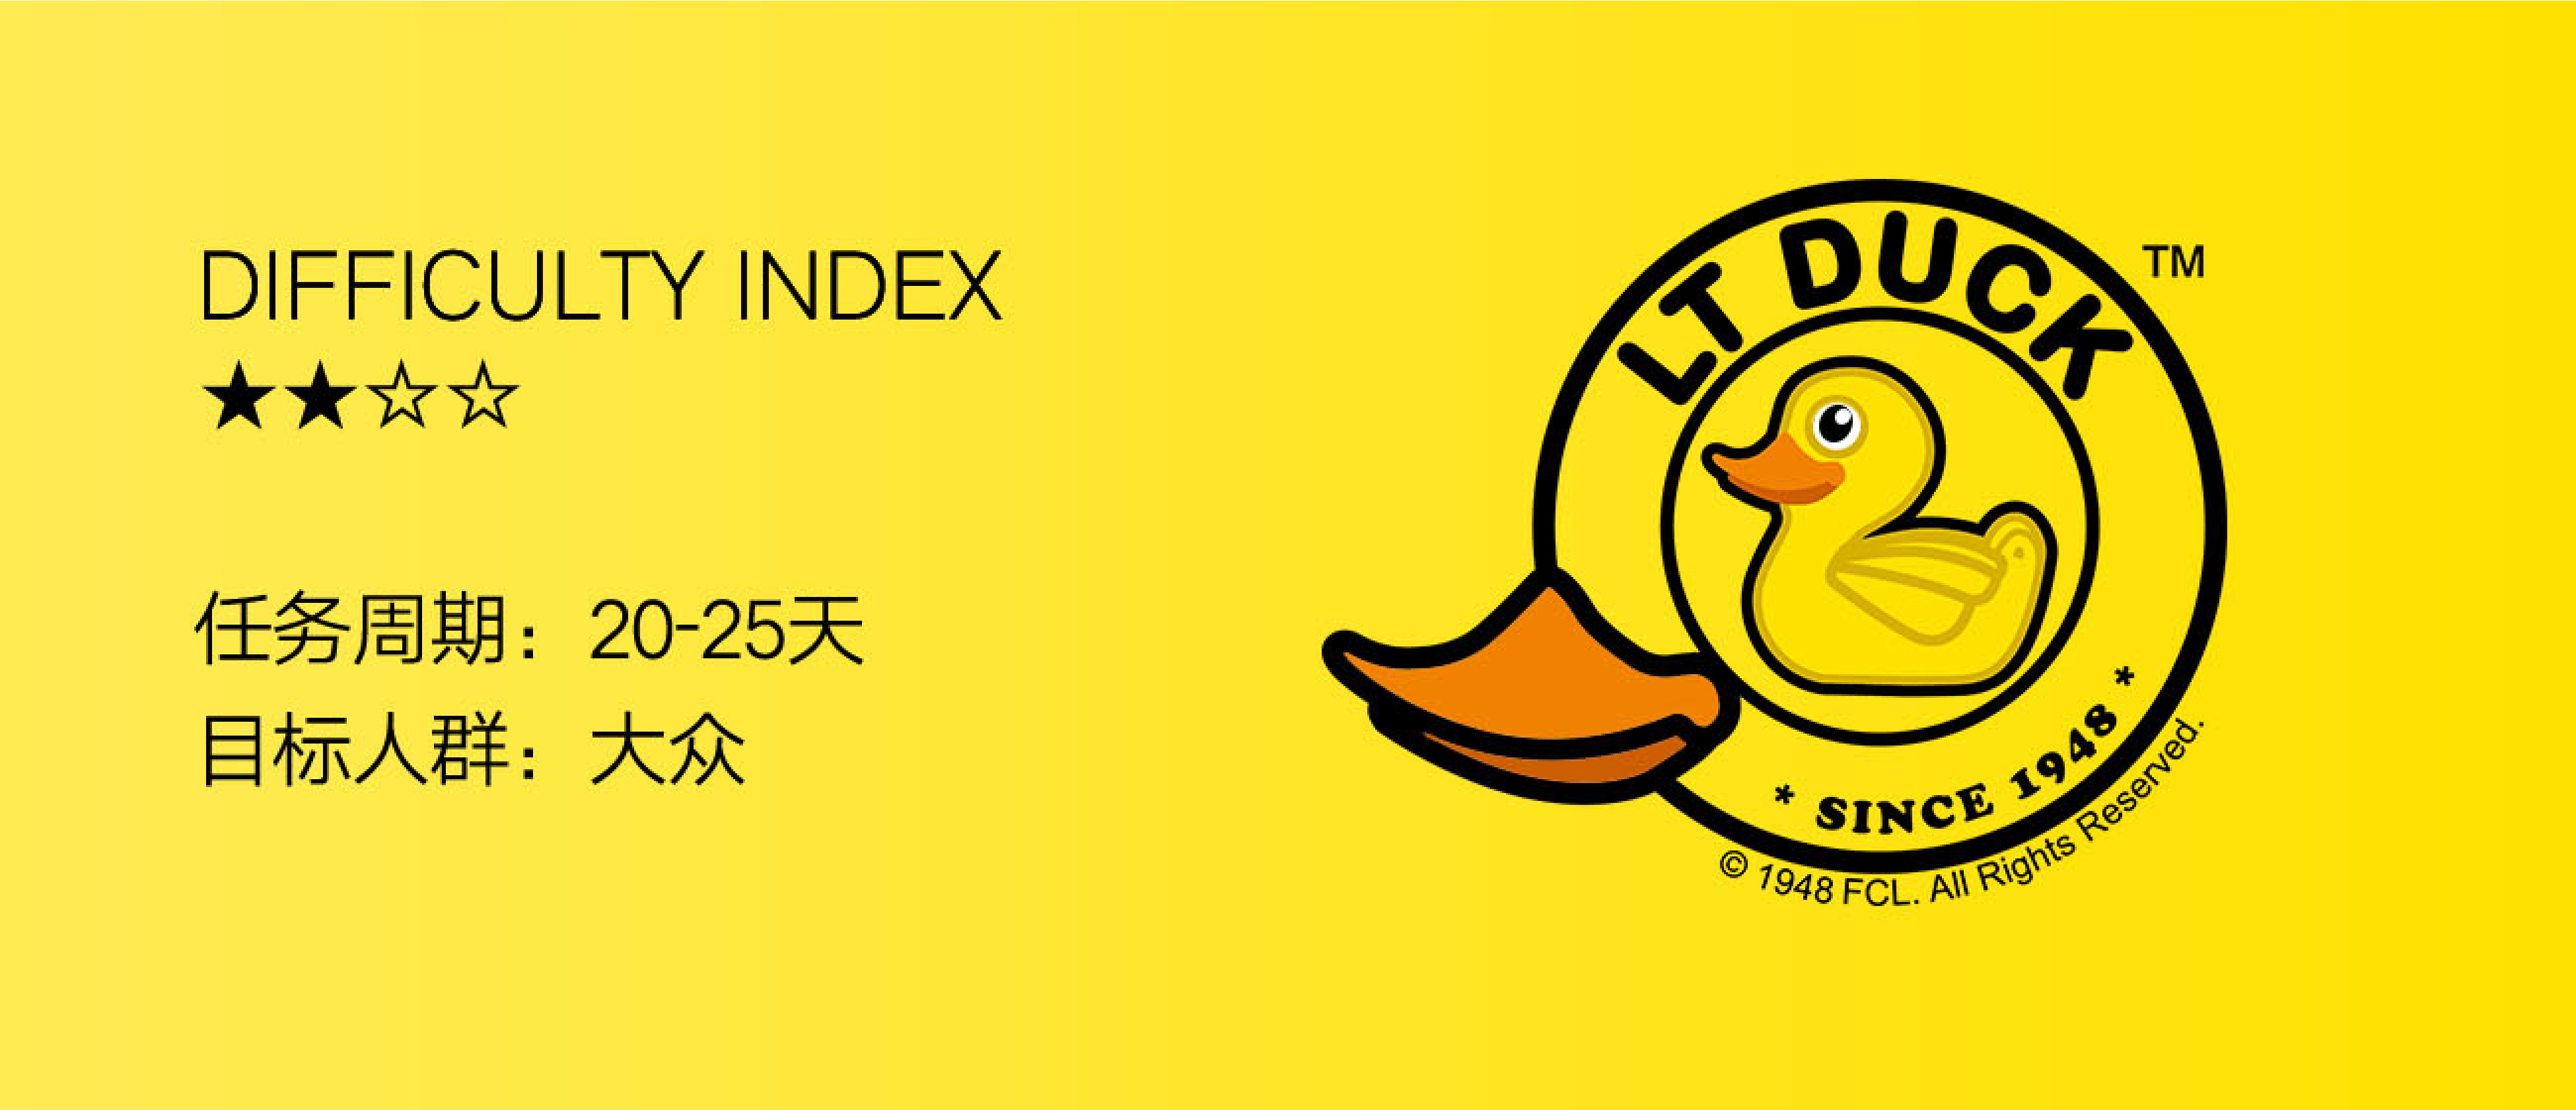 小黄鸭logo设计 标杆产品新理念